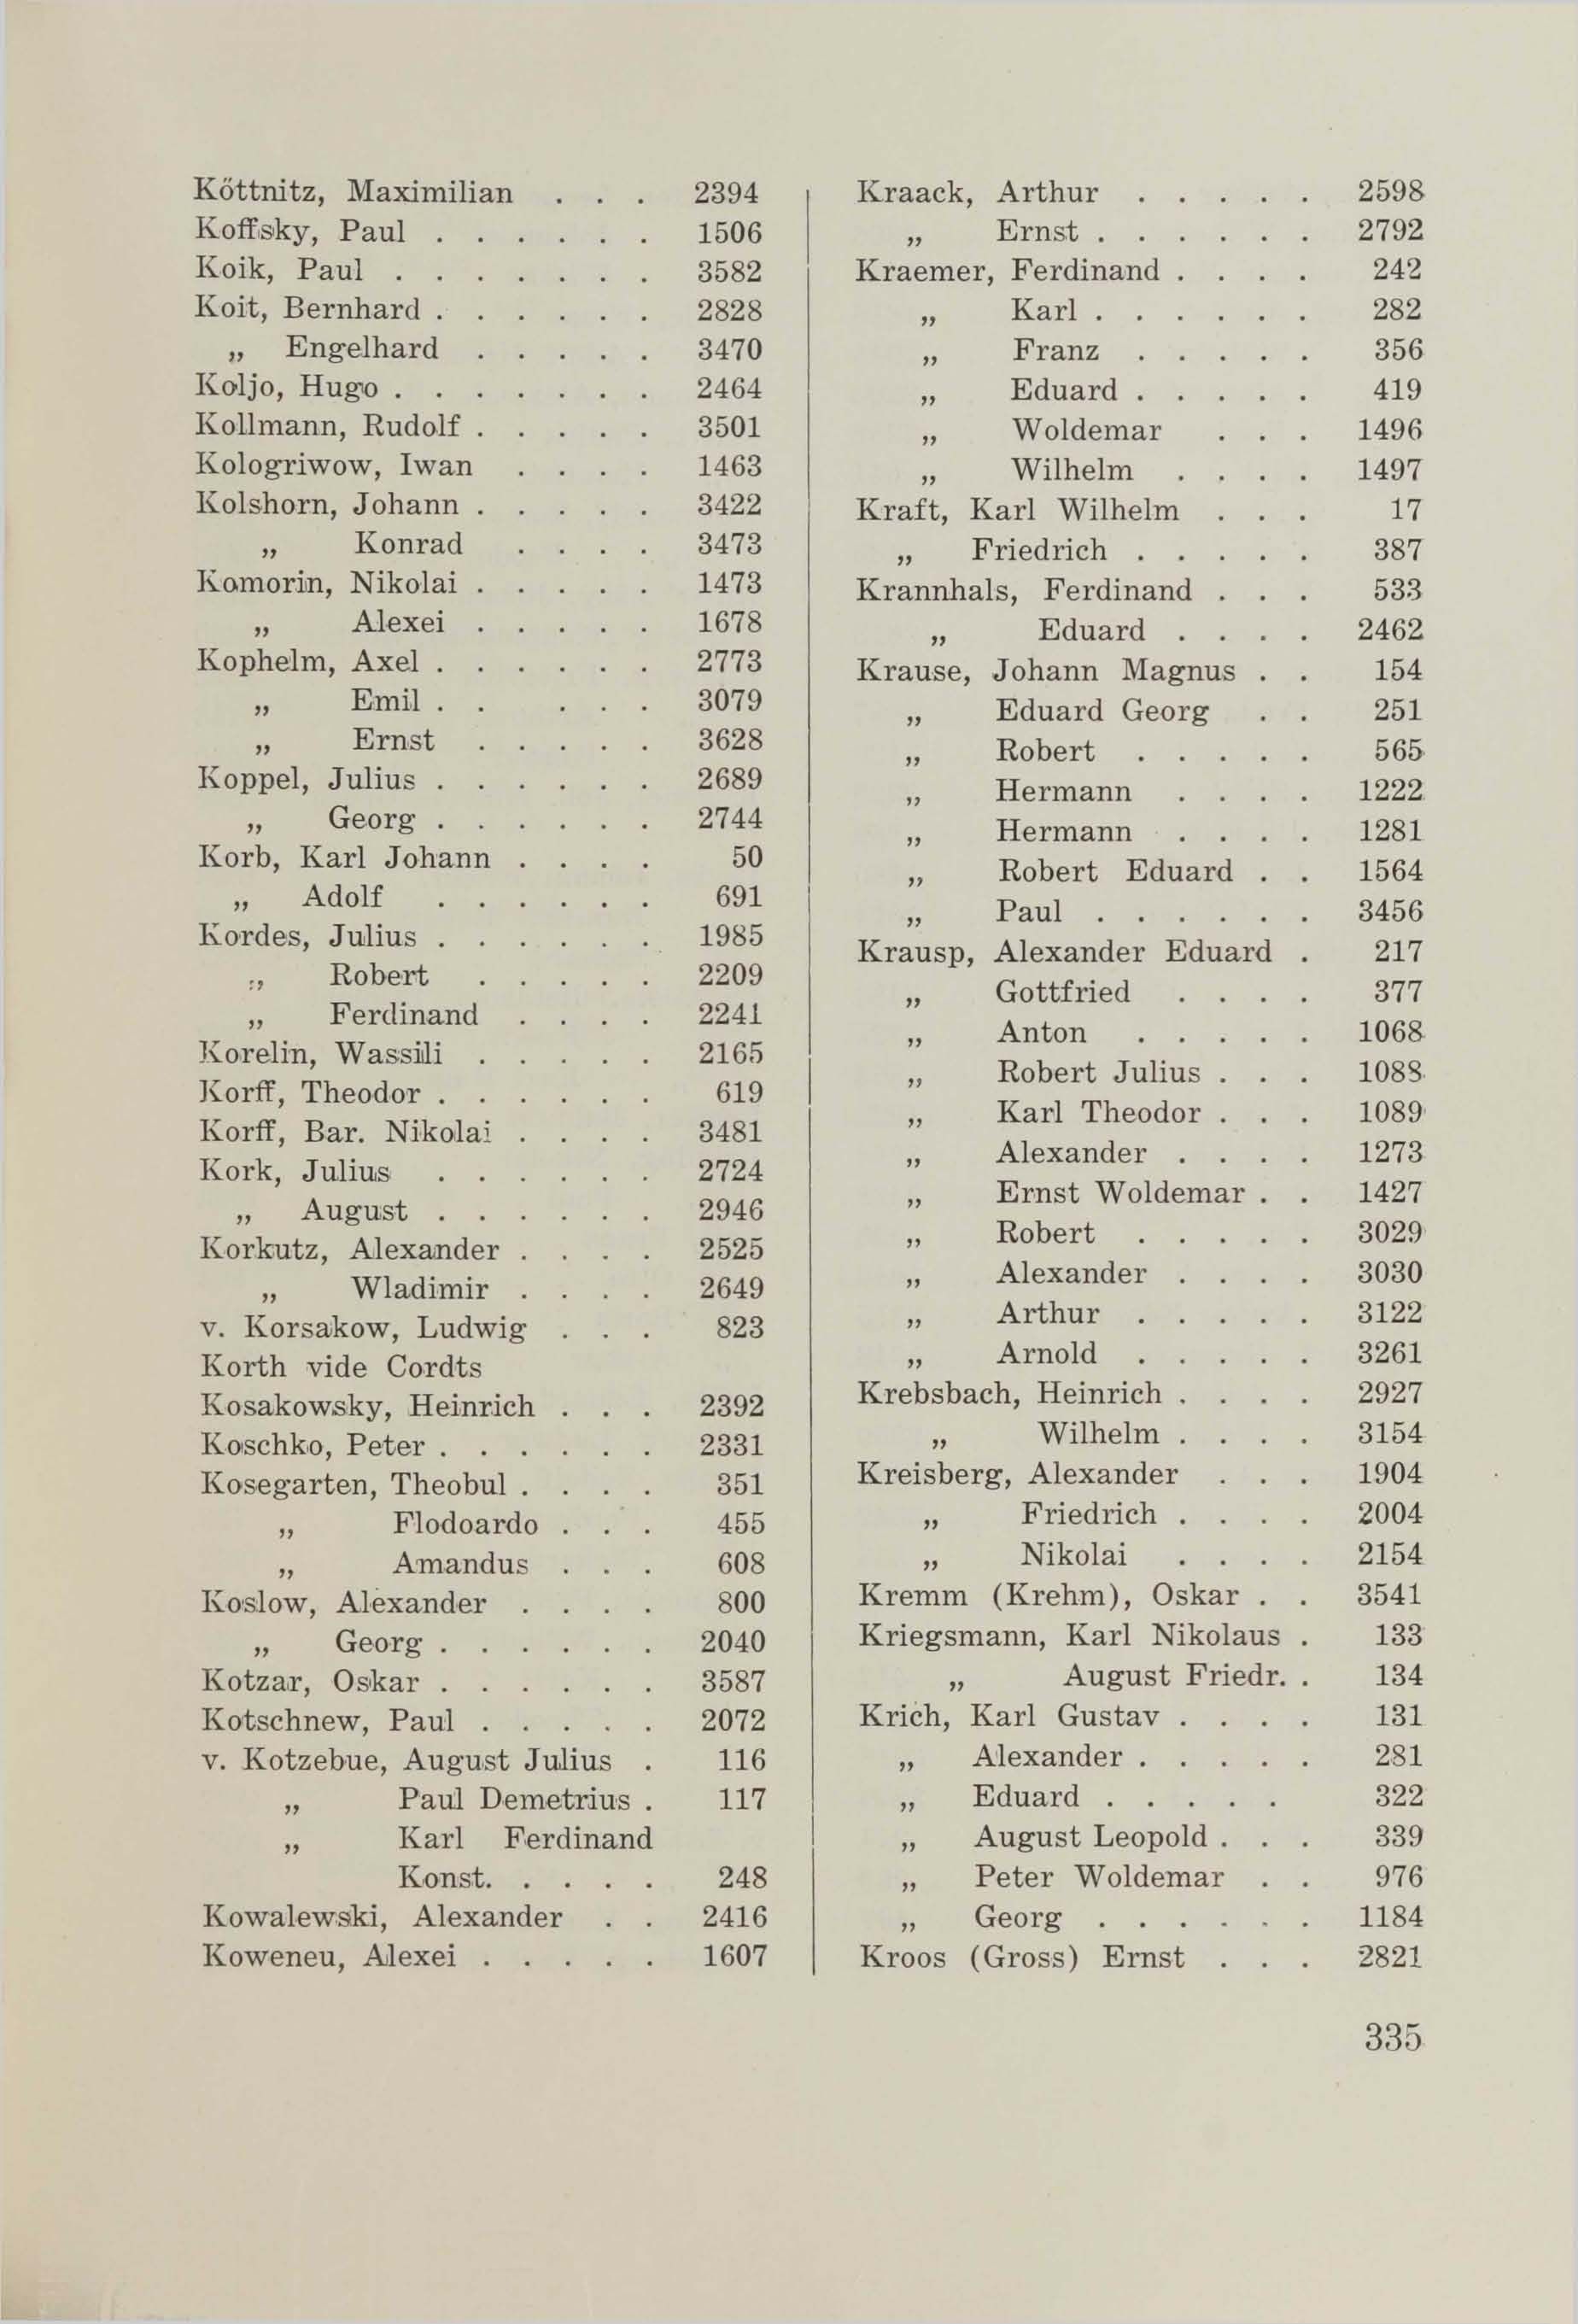 Schüler-Verzeichnis des Revalschen Gouvernements-Gymnasiums 1805–1890 (1931) | 345. (335) Main body of text